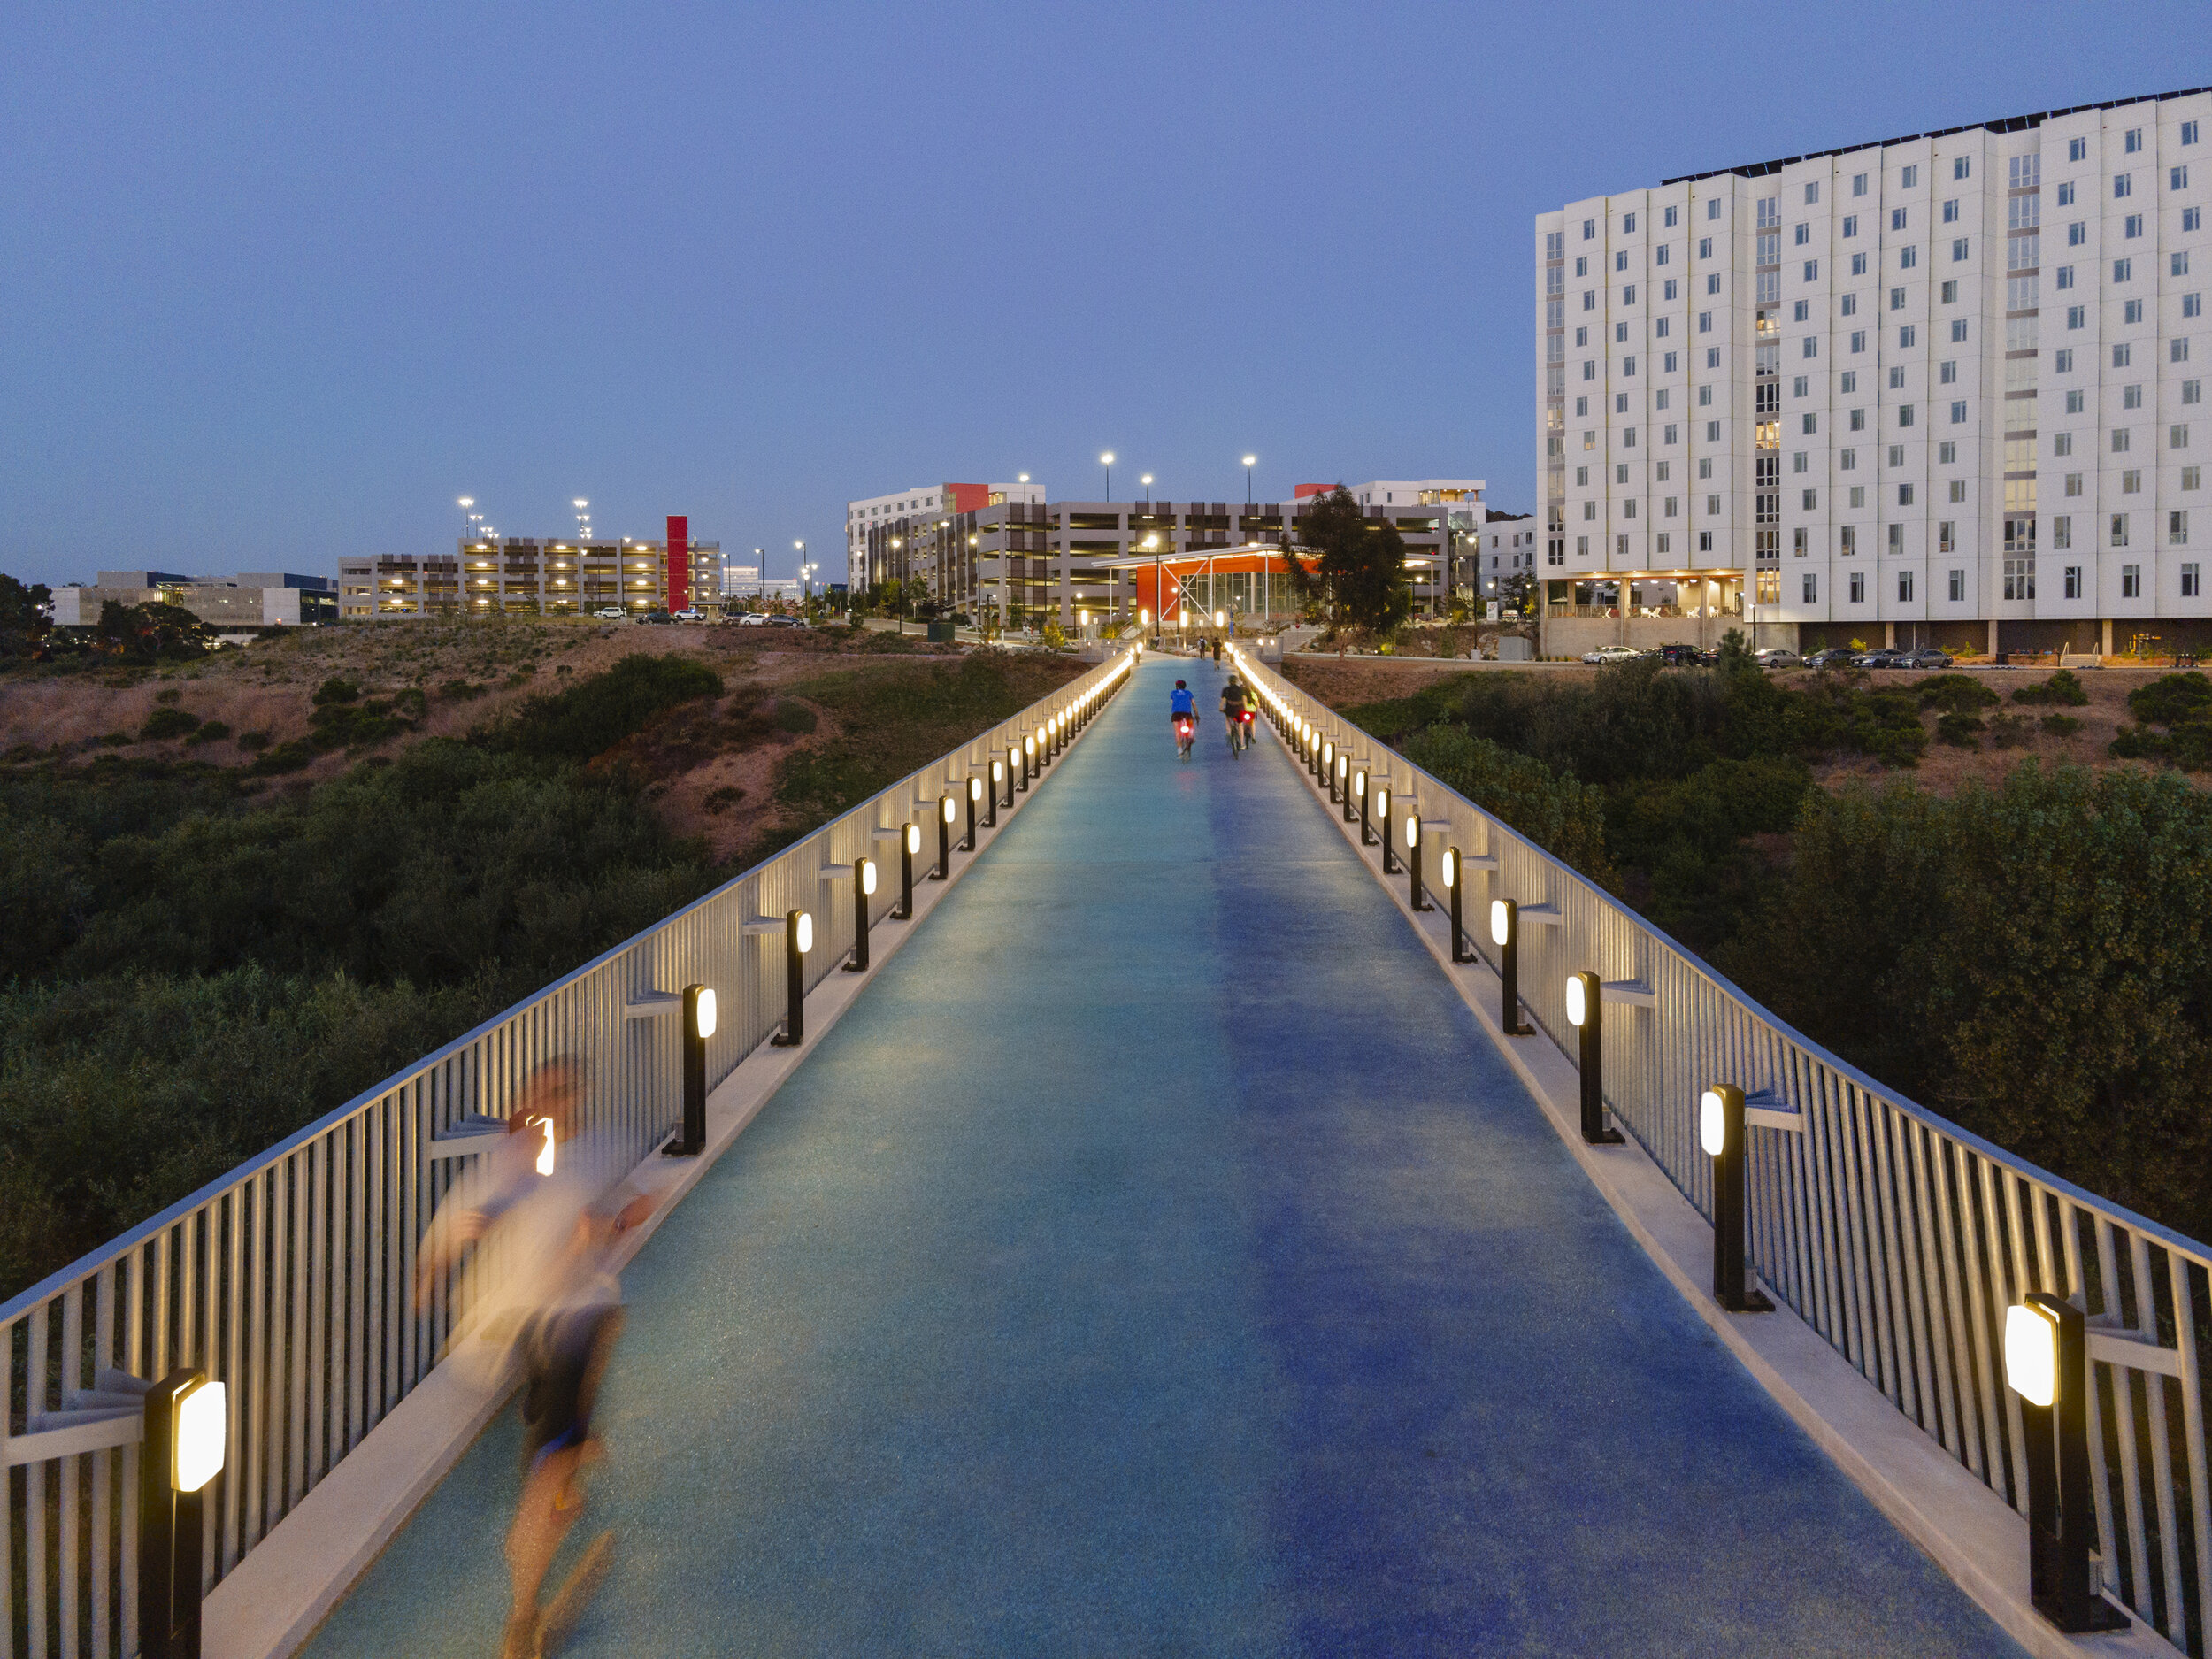 Studio E Architects, UC San Diego Mesa Housing Pedestrian & Bicycle Bridge